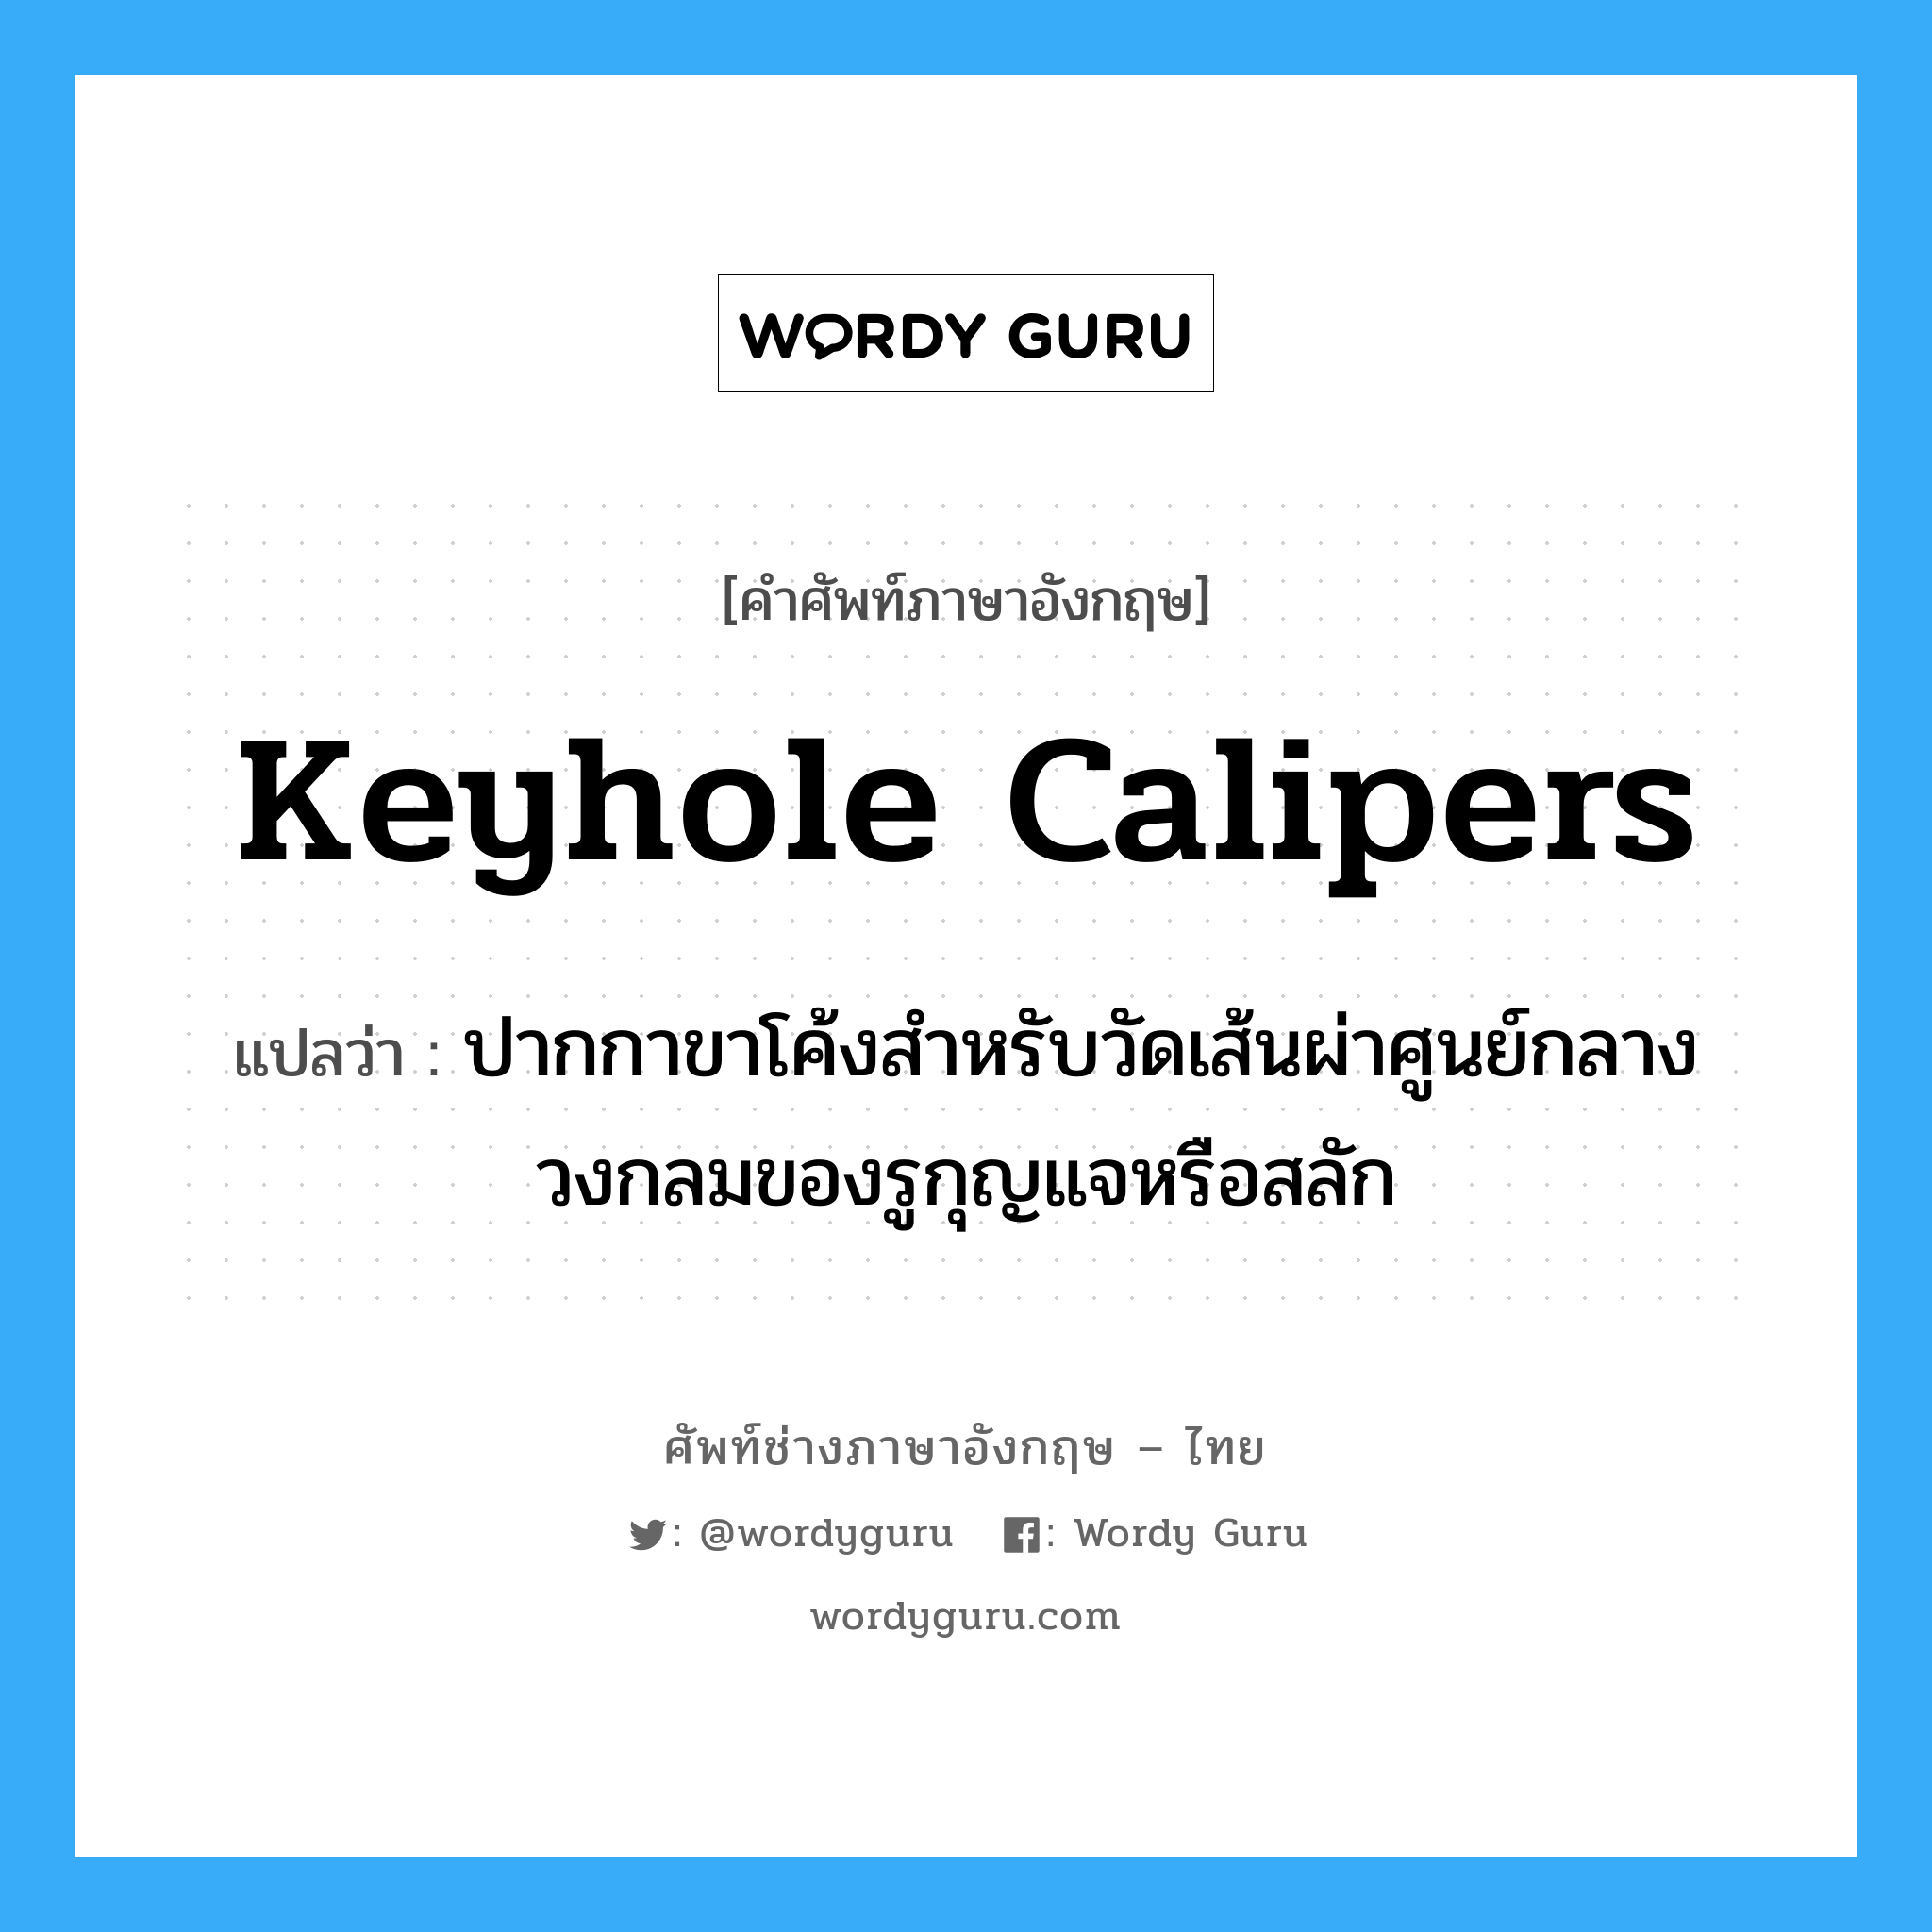 keyhole calipers แปลว่า?, คำศัพท์ช่างภาษาอังกฤษ - ไทย keyhole calipers คำศัพท์ภาษาอังกฤษ keyhole calipers แปลว่า ปากกาขาโค้งสำหรับวัดเส้นผ่าศูนย์กลางวงกลมของรูกุญแจหรือสลัก